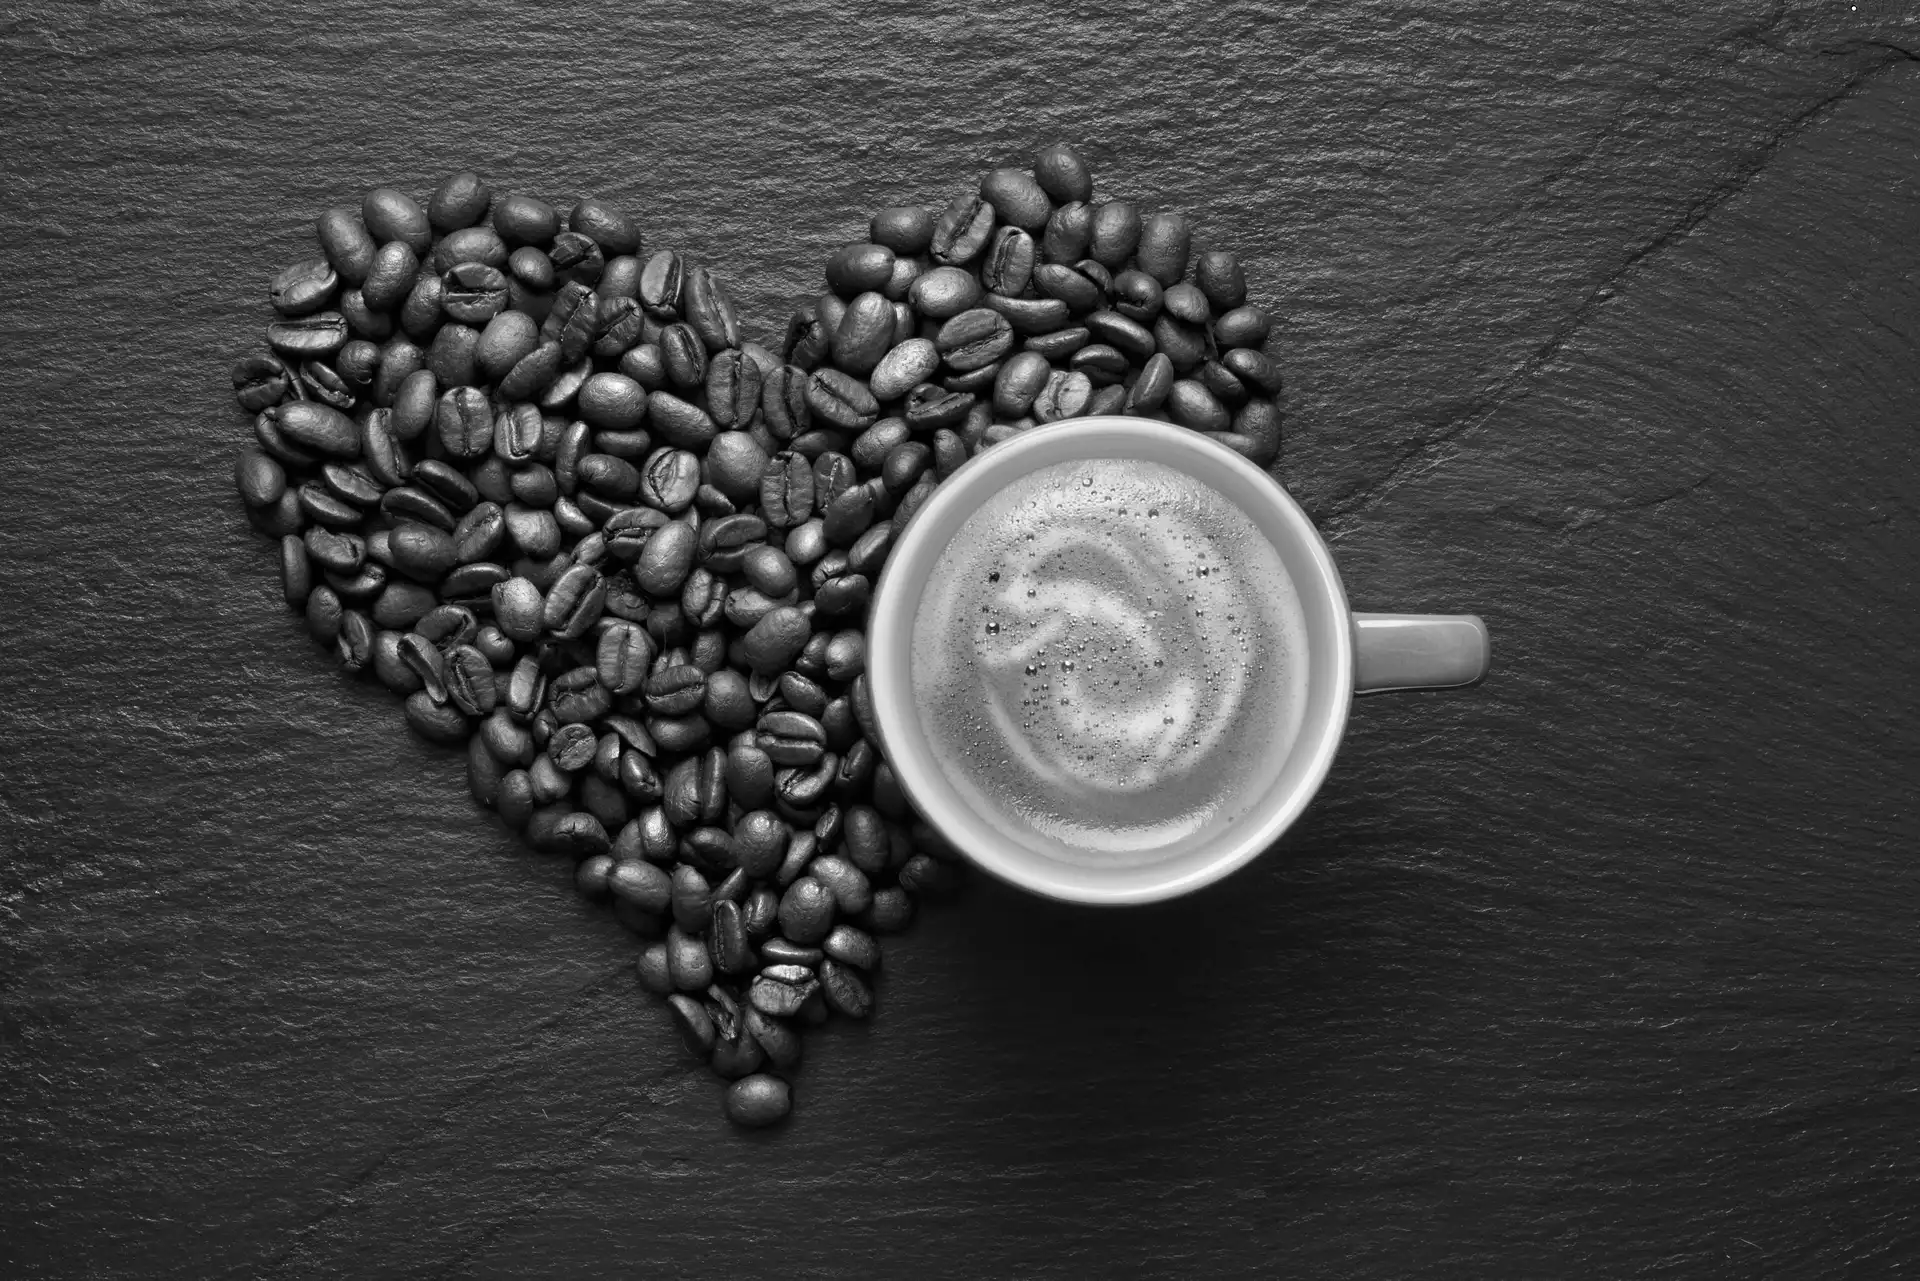 Love things, coffee, grains